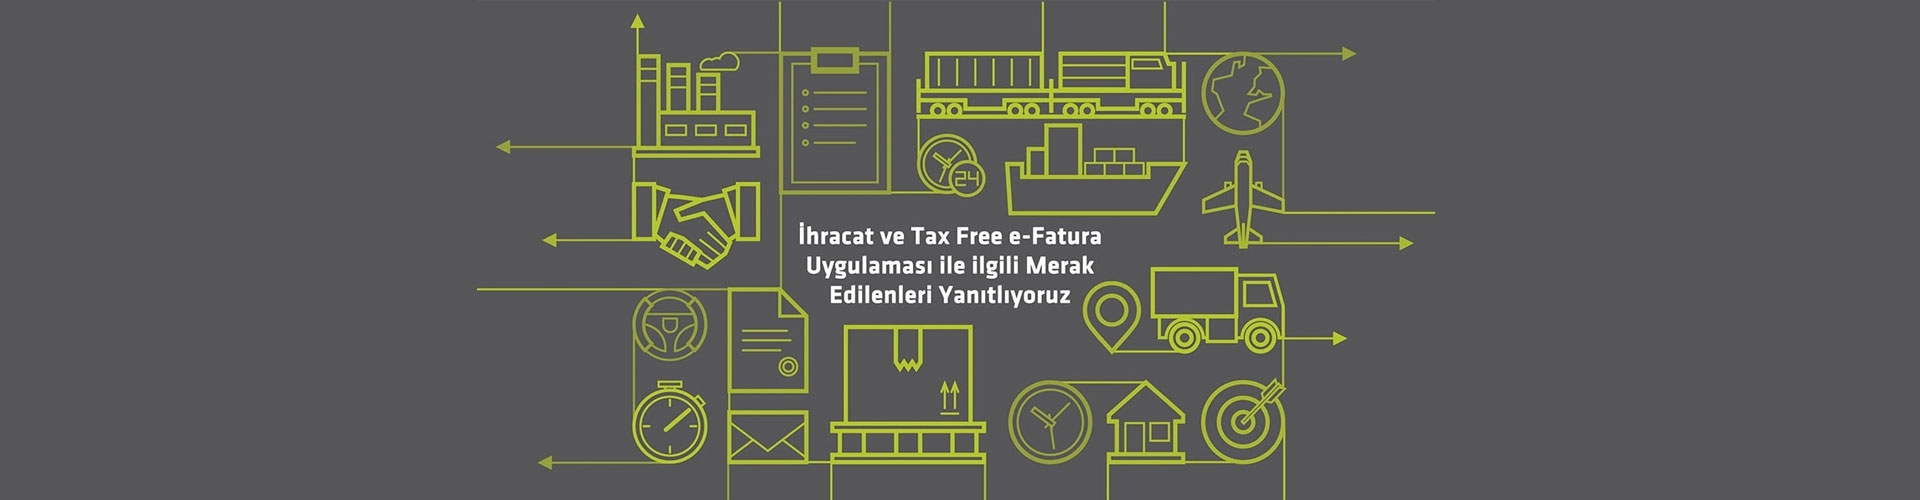 DIGITAL PLANET “İhracat ve Tax Free e-Fatura” Uygulaması ile İlgili Merak Edilenleri Yanıtlıyor